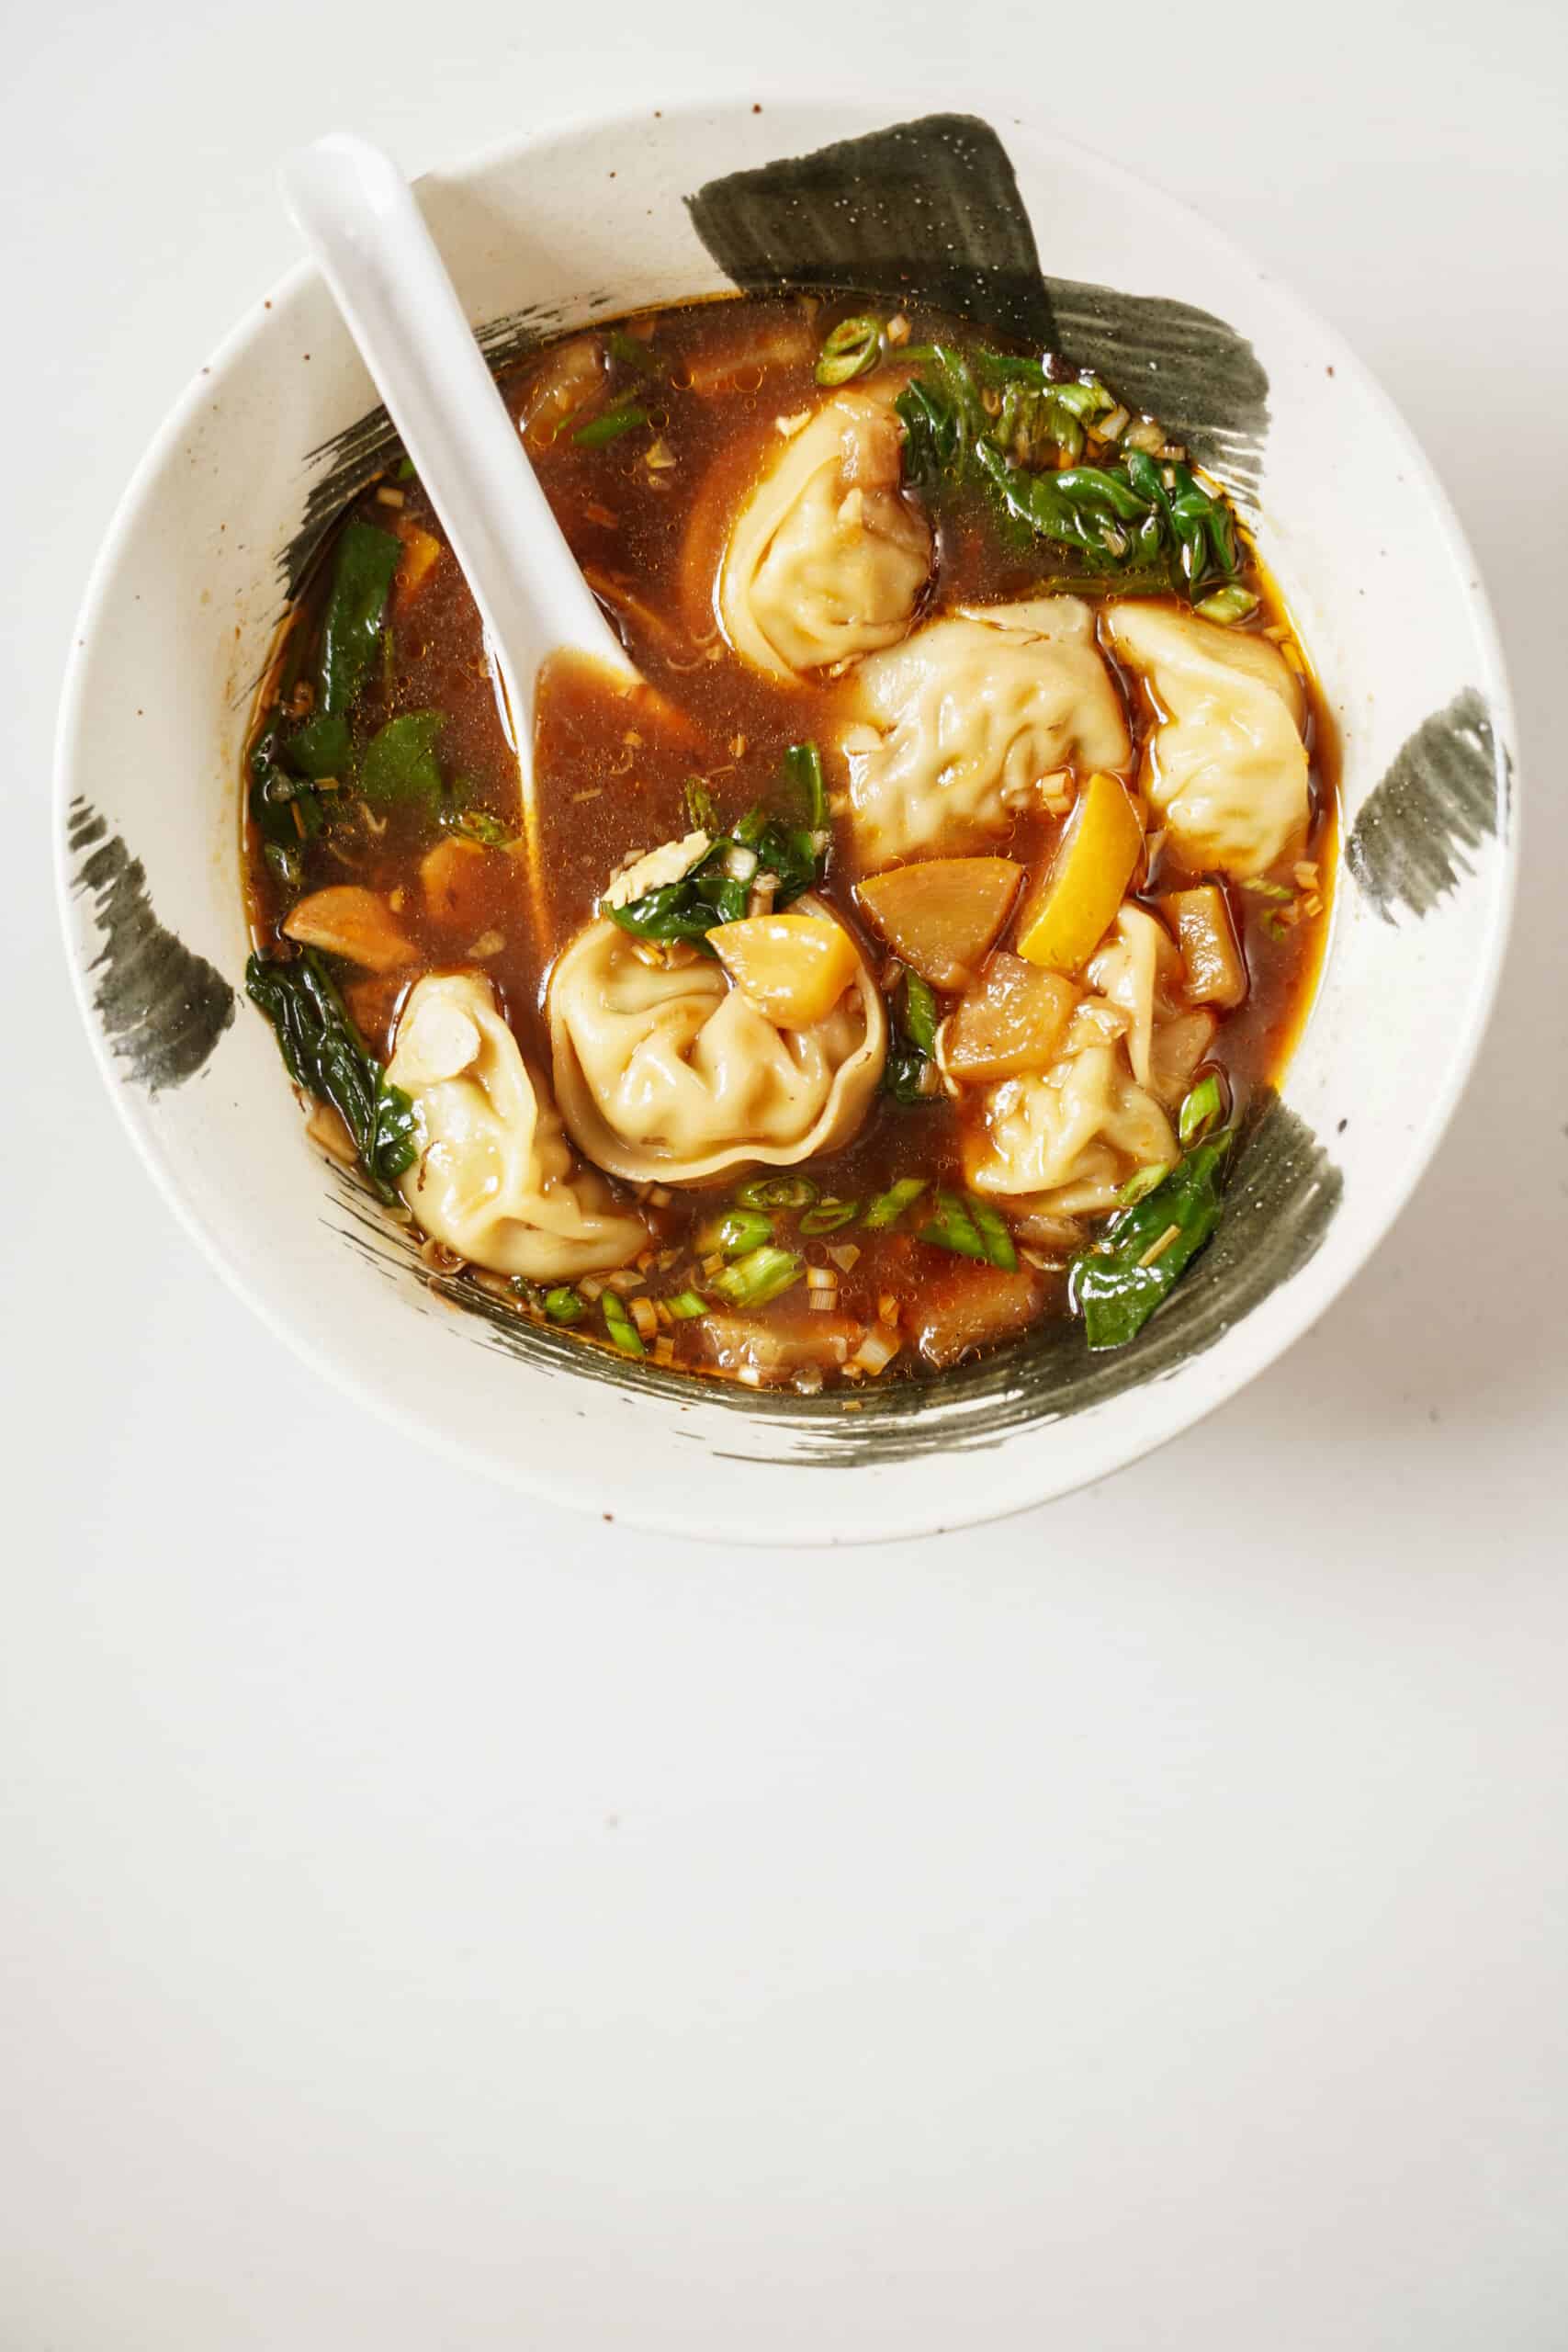 Dumpling Soup Recipe - How to Make Dumpling Soup